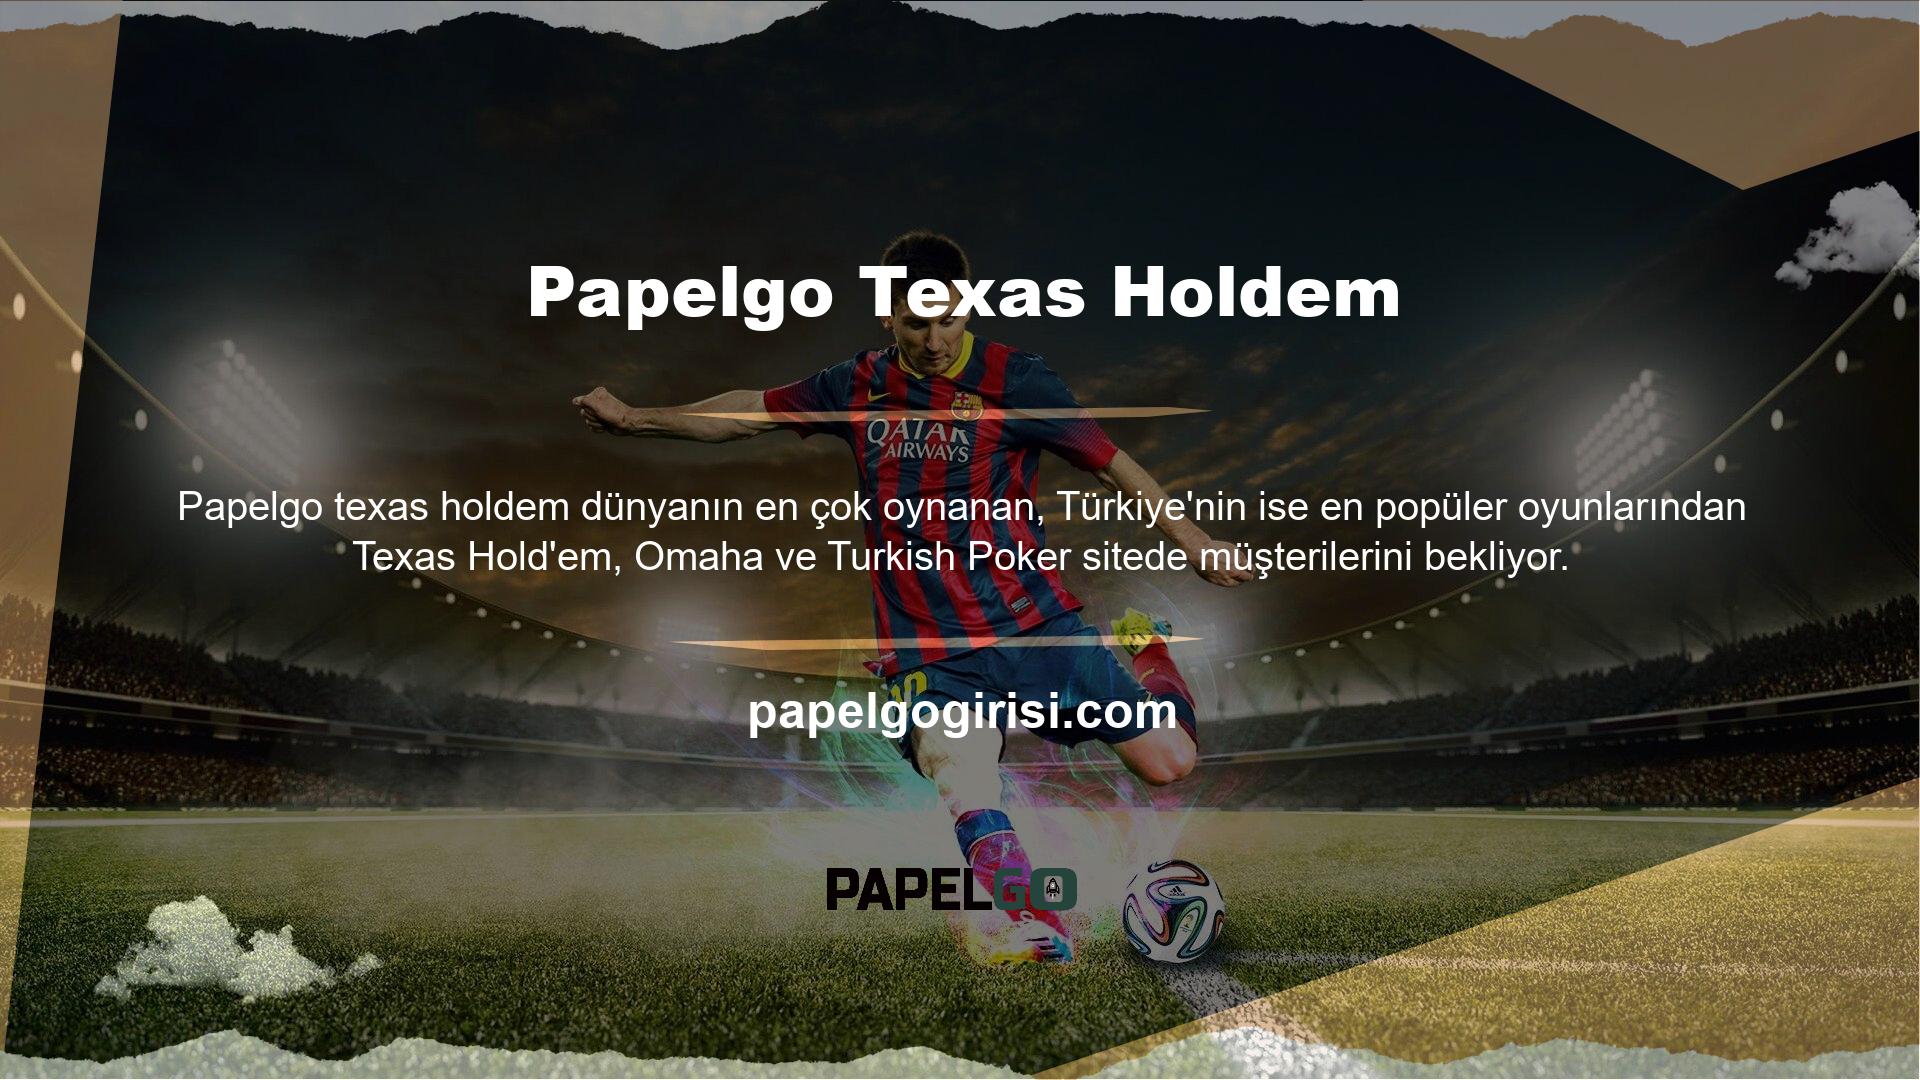 Tüm sitelerin yabancı sağlayıcılar olması nedeniyle, Türkiye'deki birçok casino sağlayıcı kısa sürede Papelgo mobil uygulamasını kullanarak faaliyet göstermeye başlamıştır